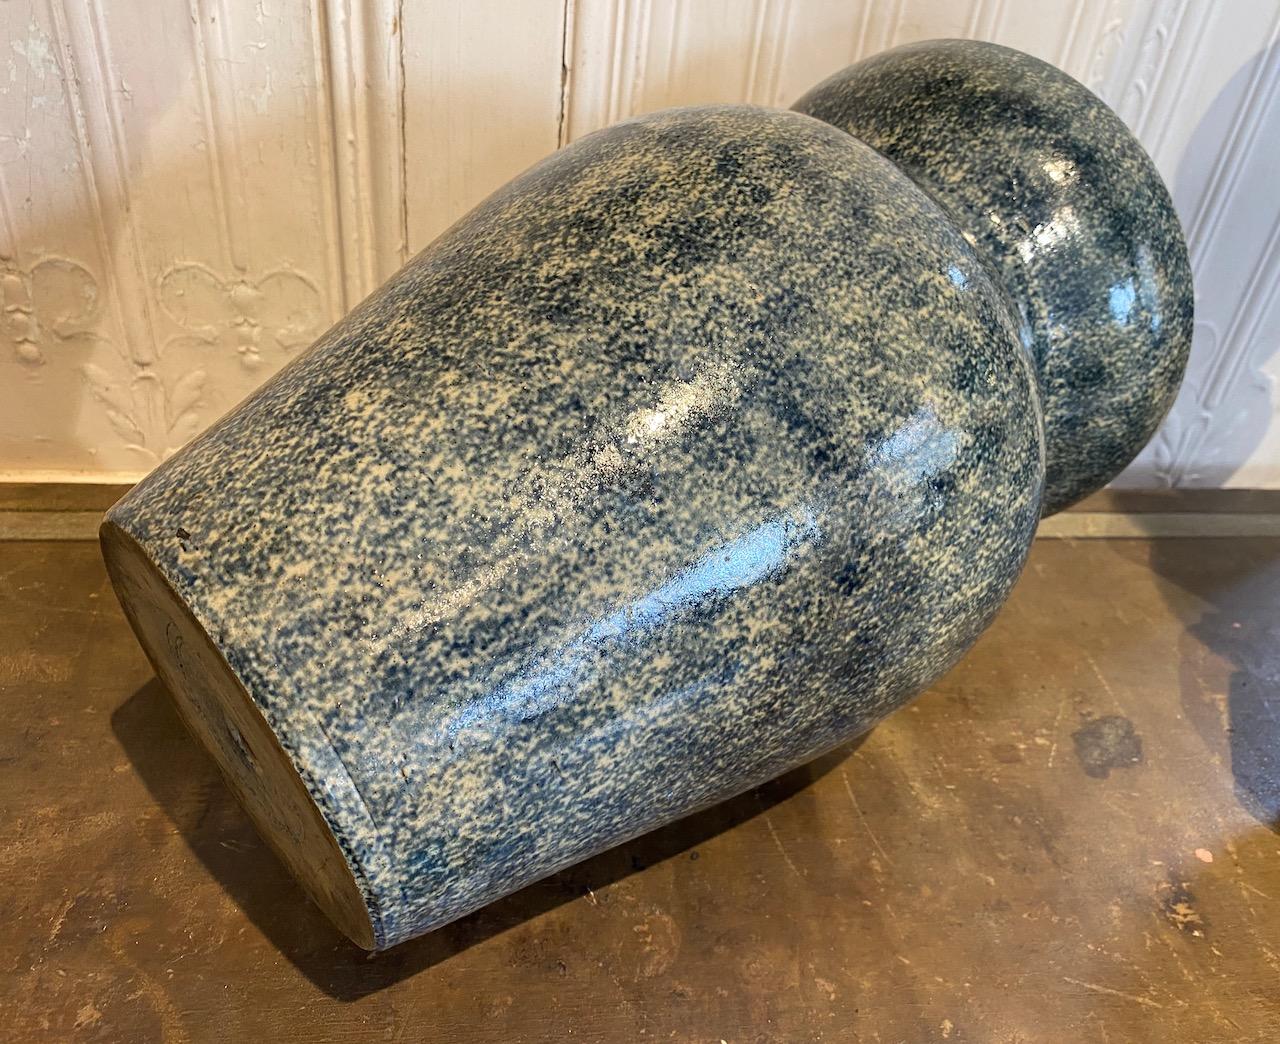 Victorian Sponge Ware Vase